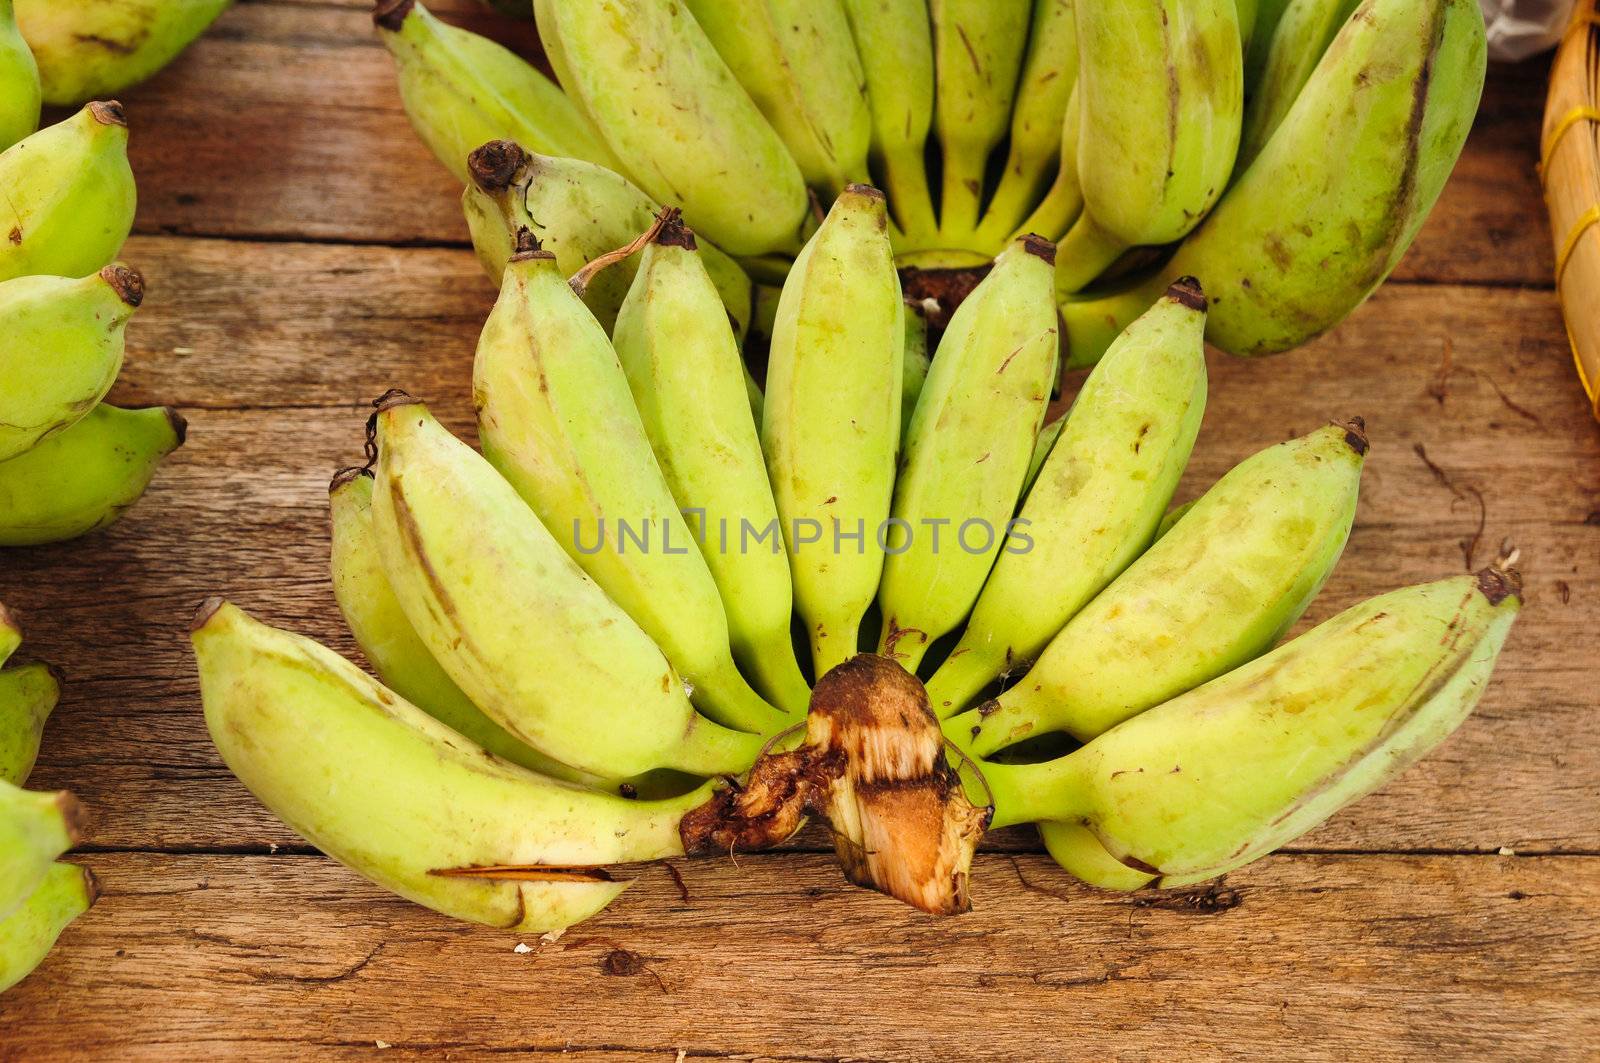 banana on market